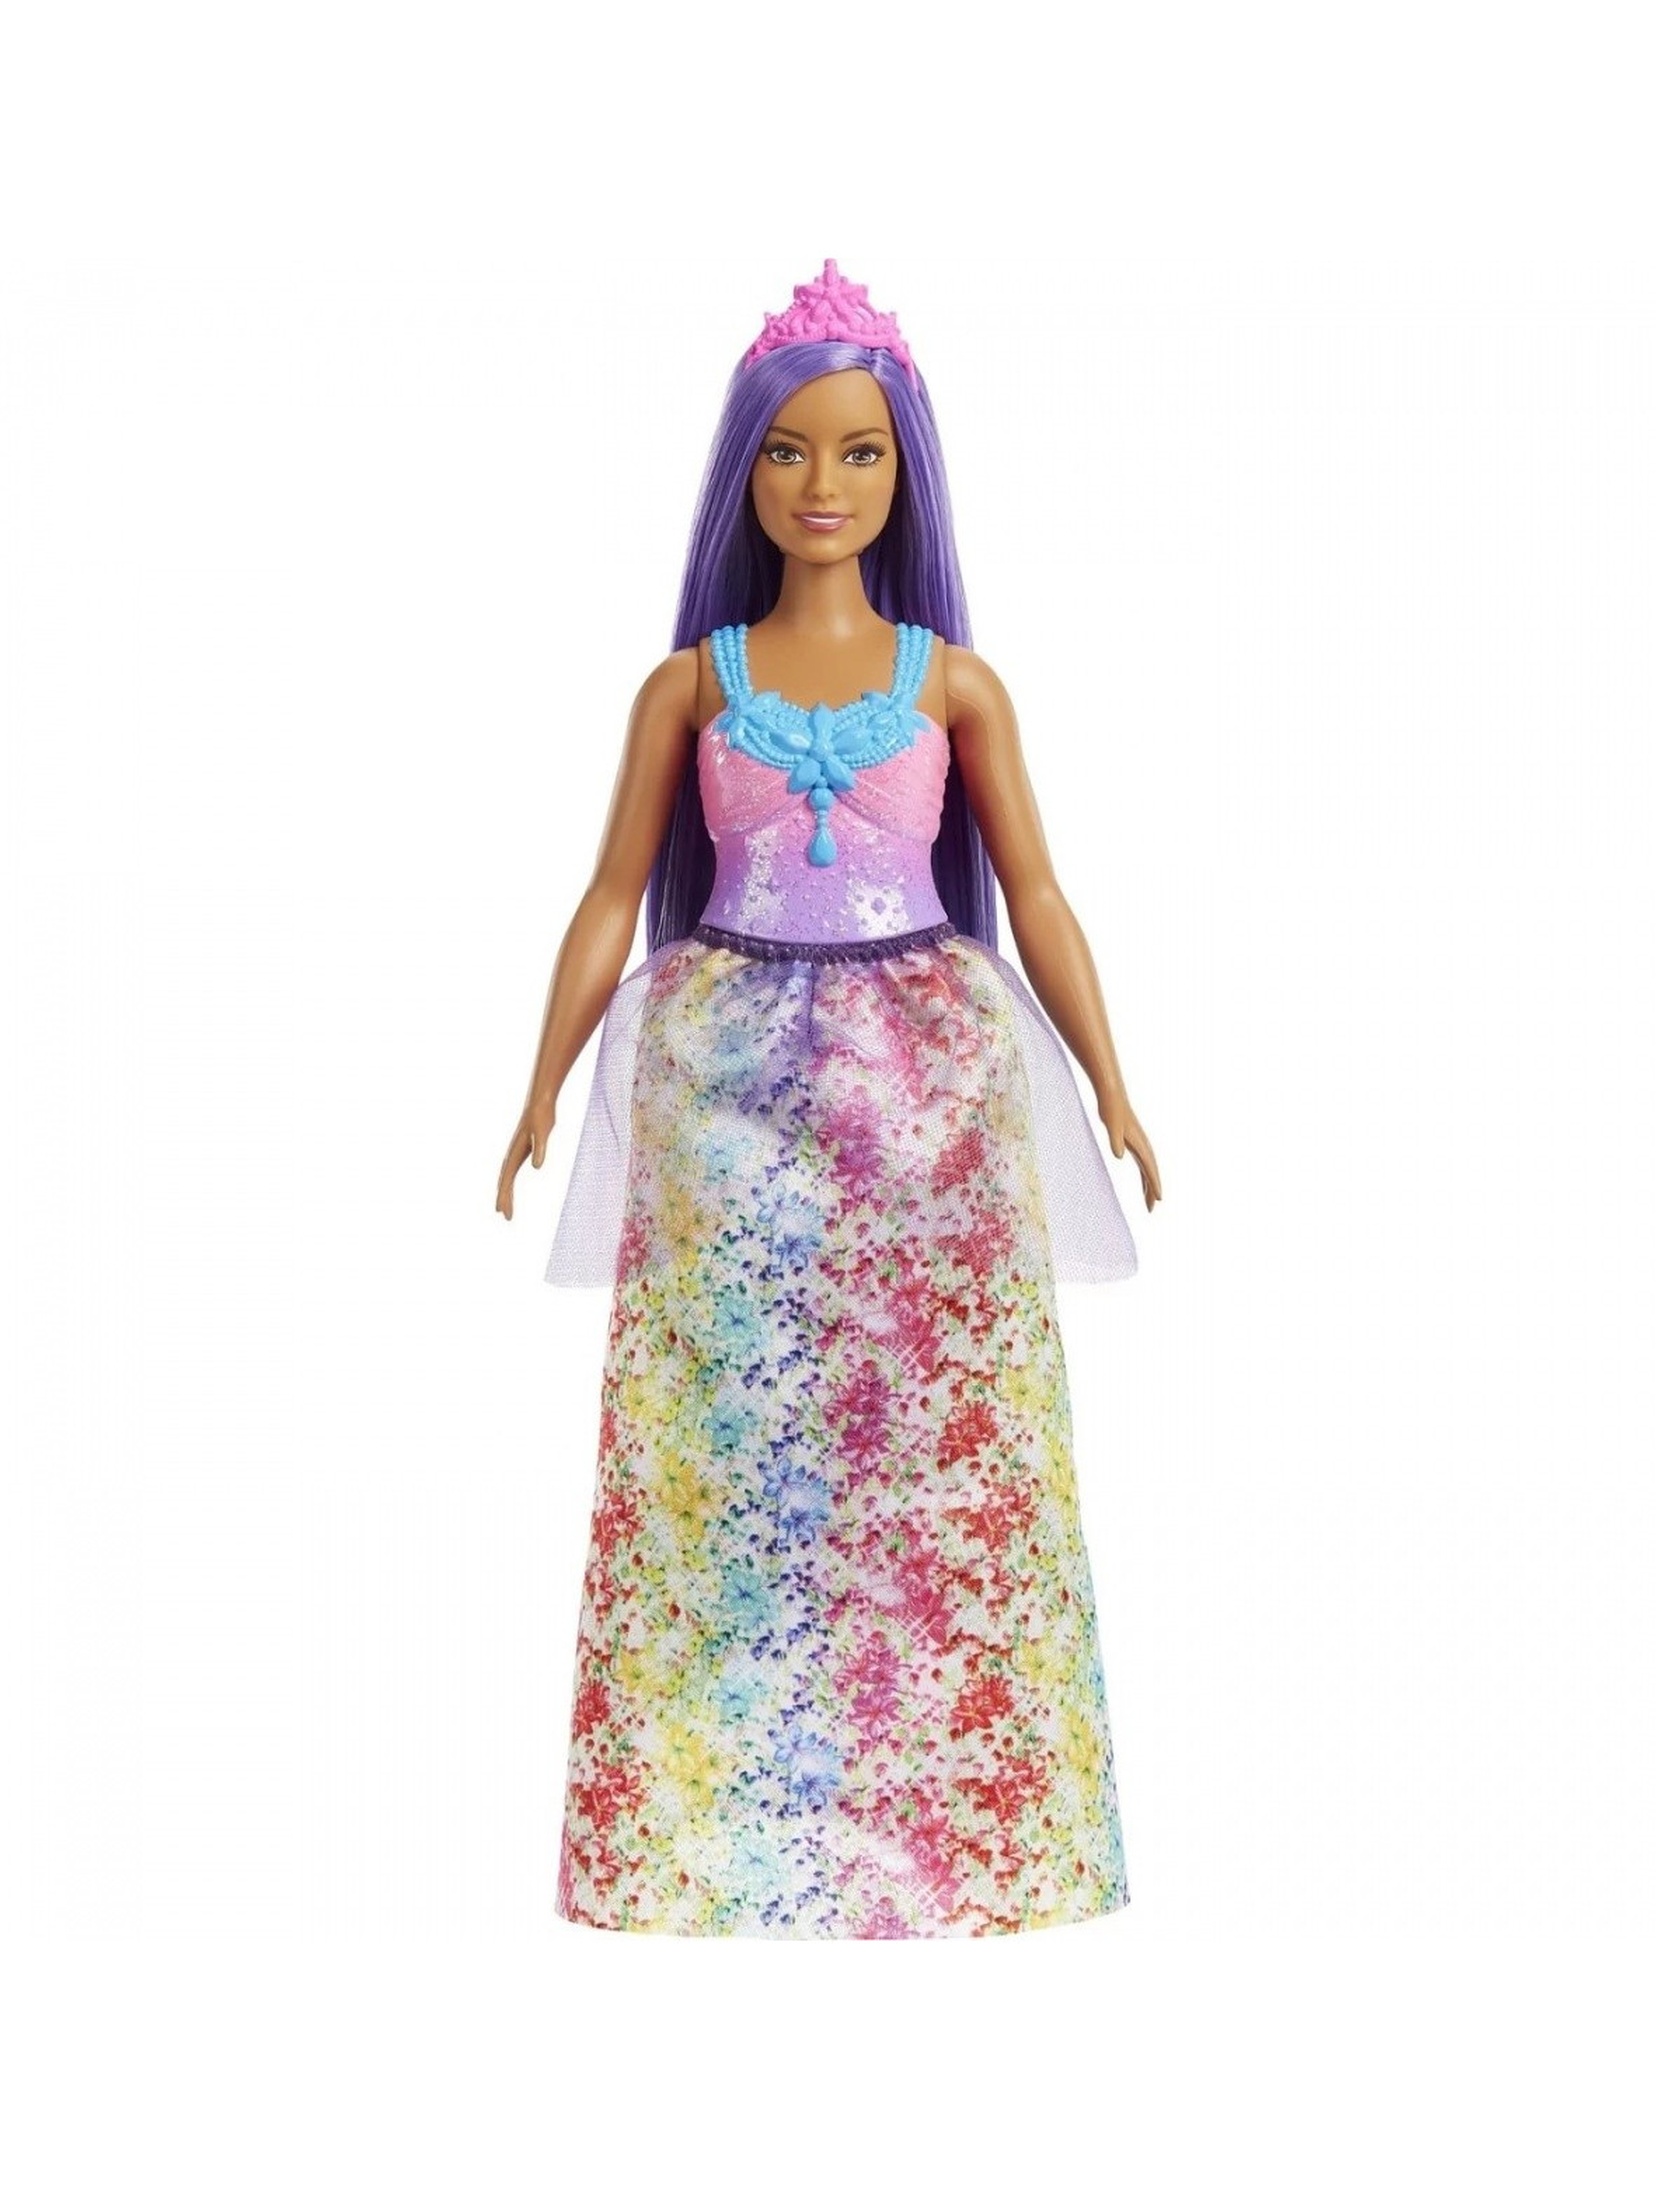 Lalka Barbie Dreamtopia fioletowe włosy